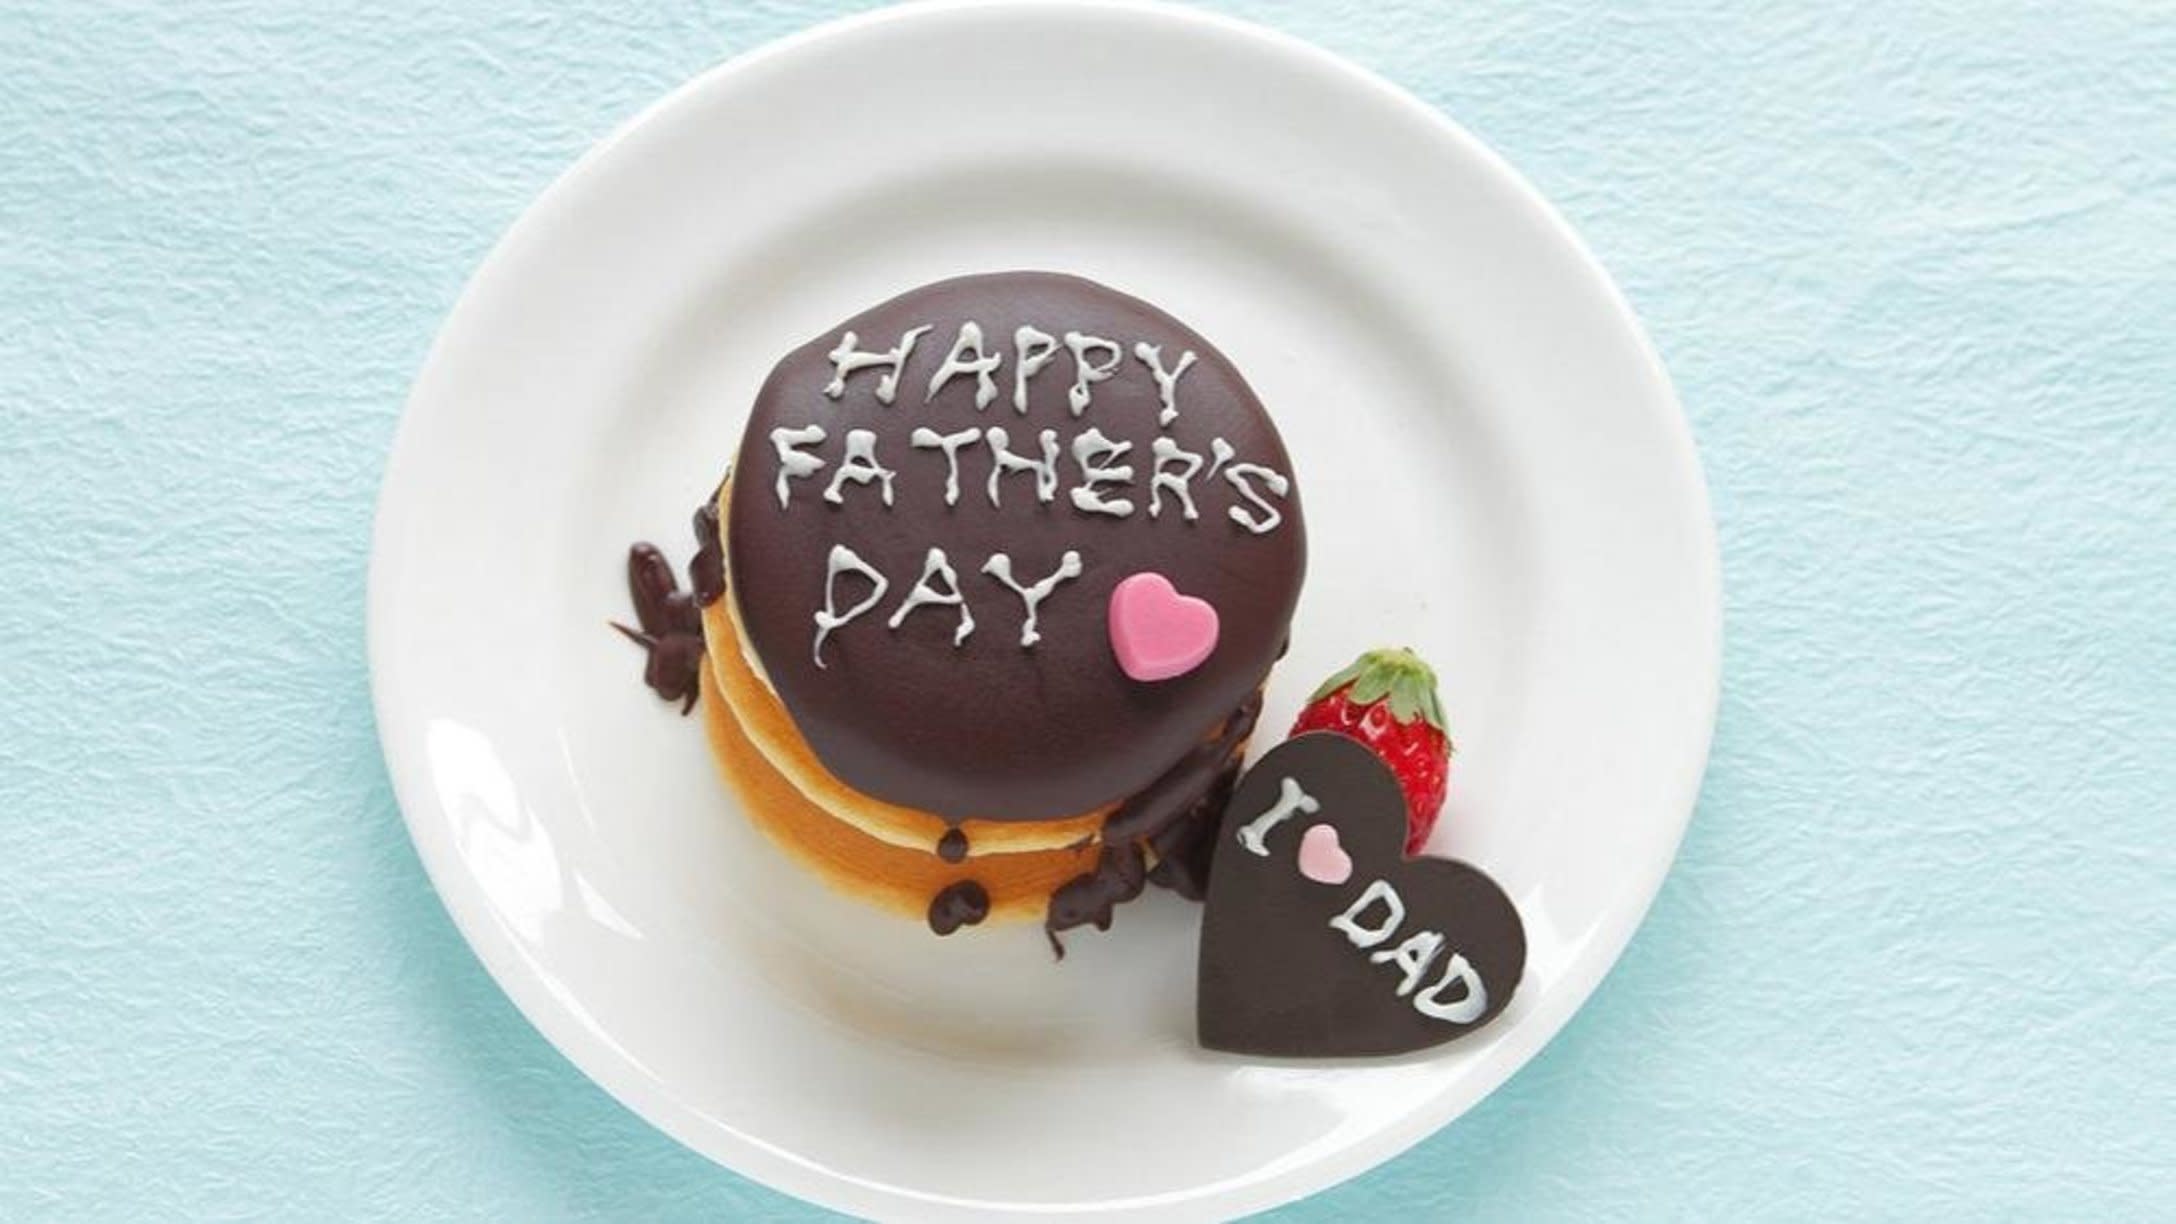 Happy Father's Day Cake - Cake'O'Clocks-sgquangbinhtourist.com.vn